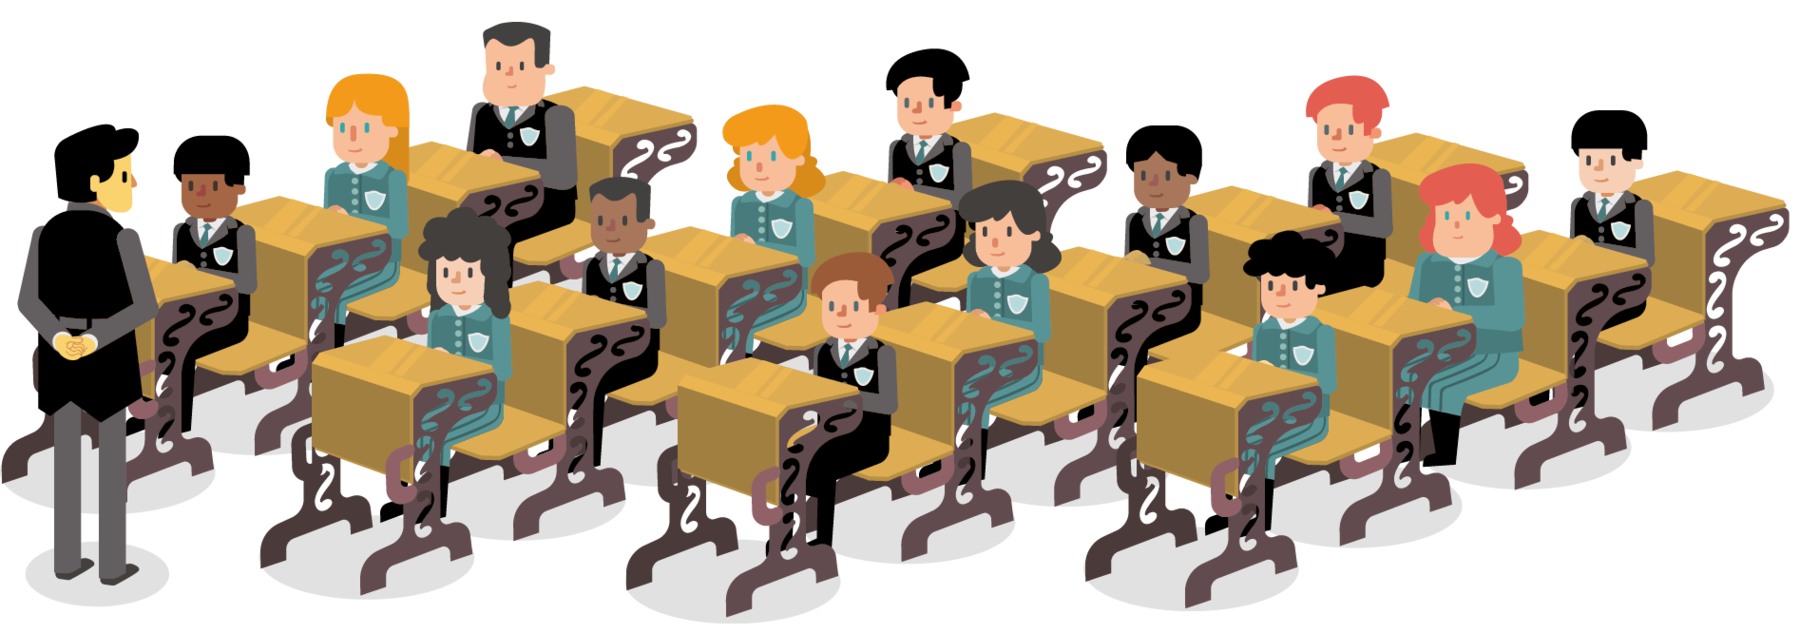 Ilustração. Professor e alunos na sala de aula. Um homem, usando camisa, calça e avental preto, está de pé com as mãos para trás olhando na direção de crianças uniformizadas e sentadas em carteiras escolares de madeira.